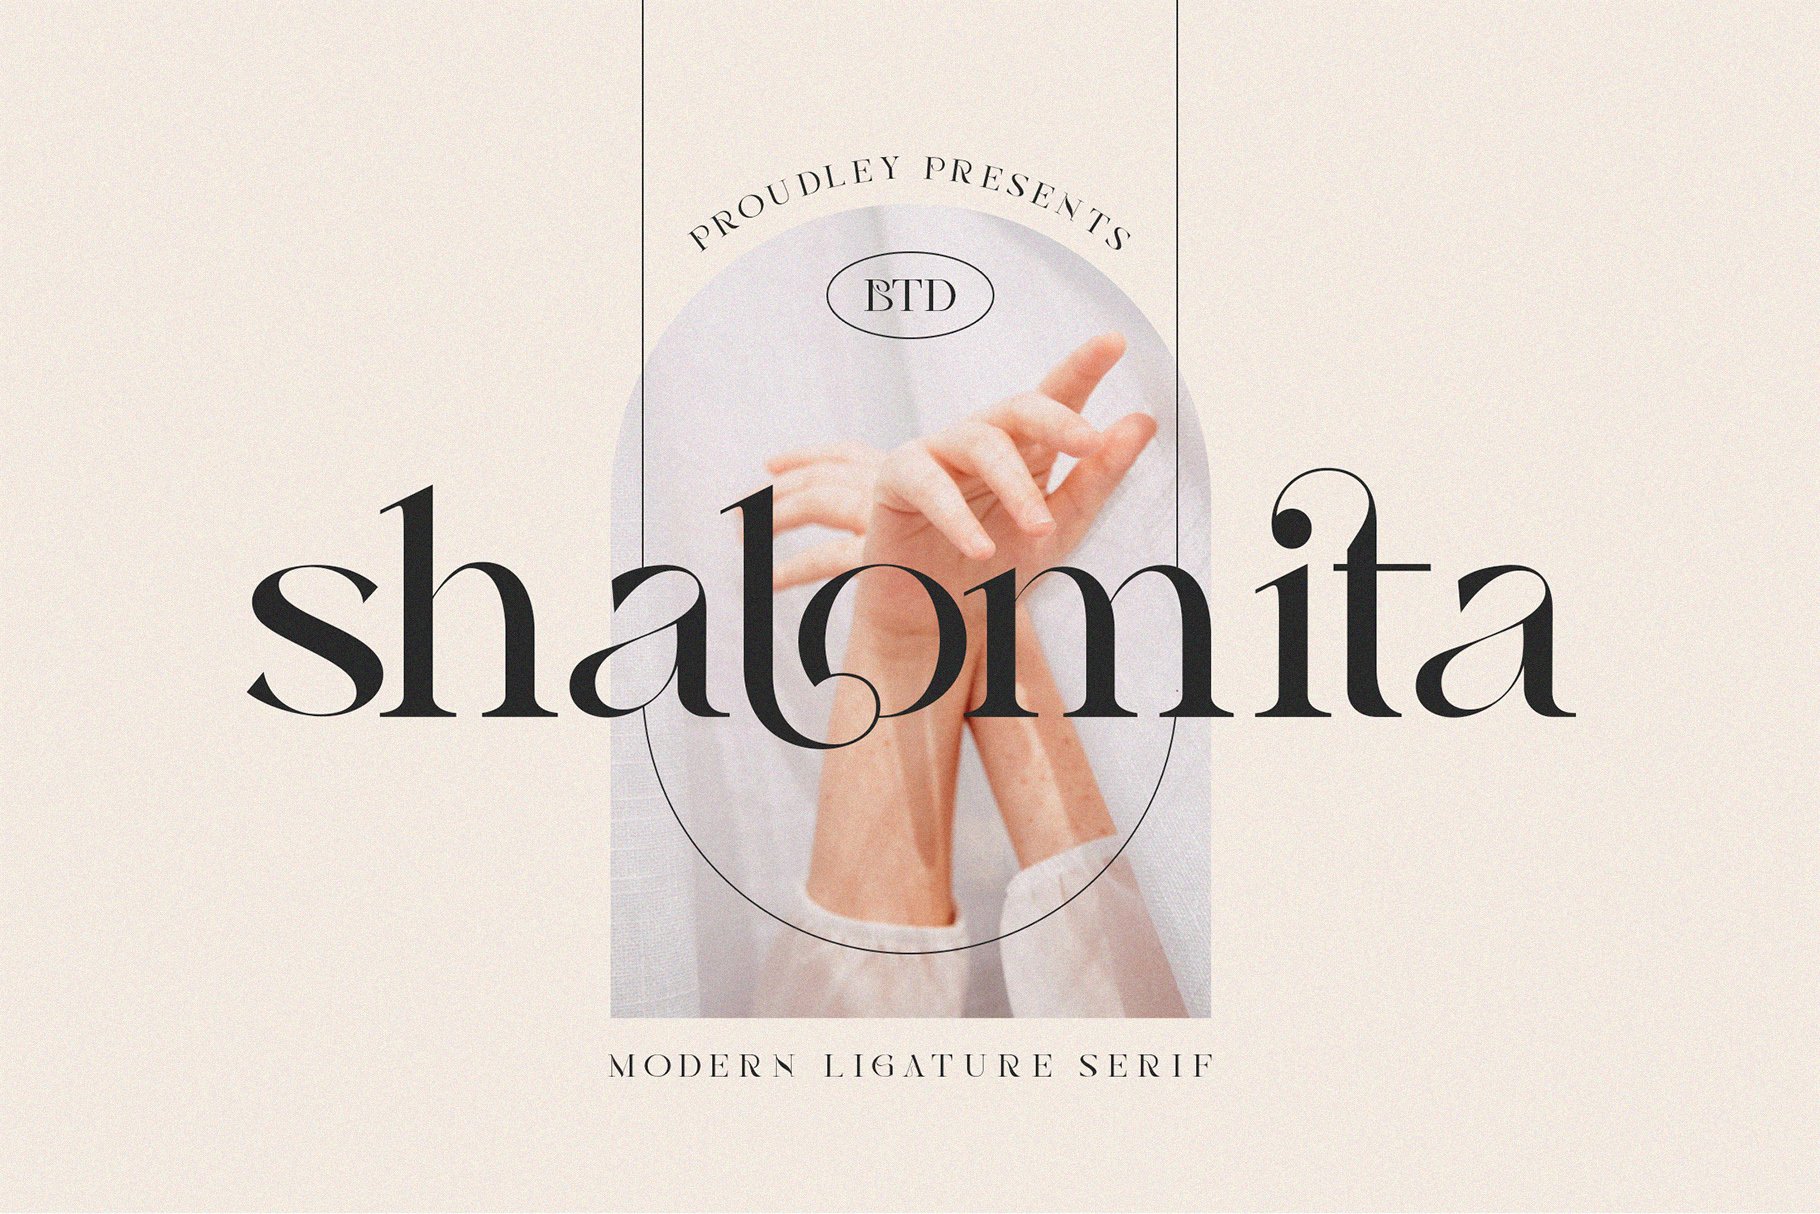 Shalomita cover image.